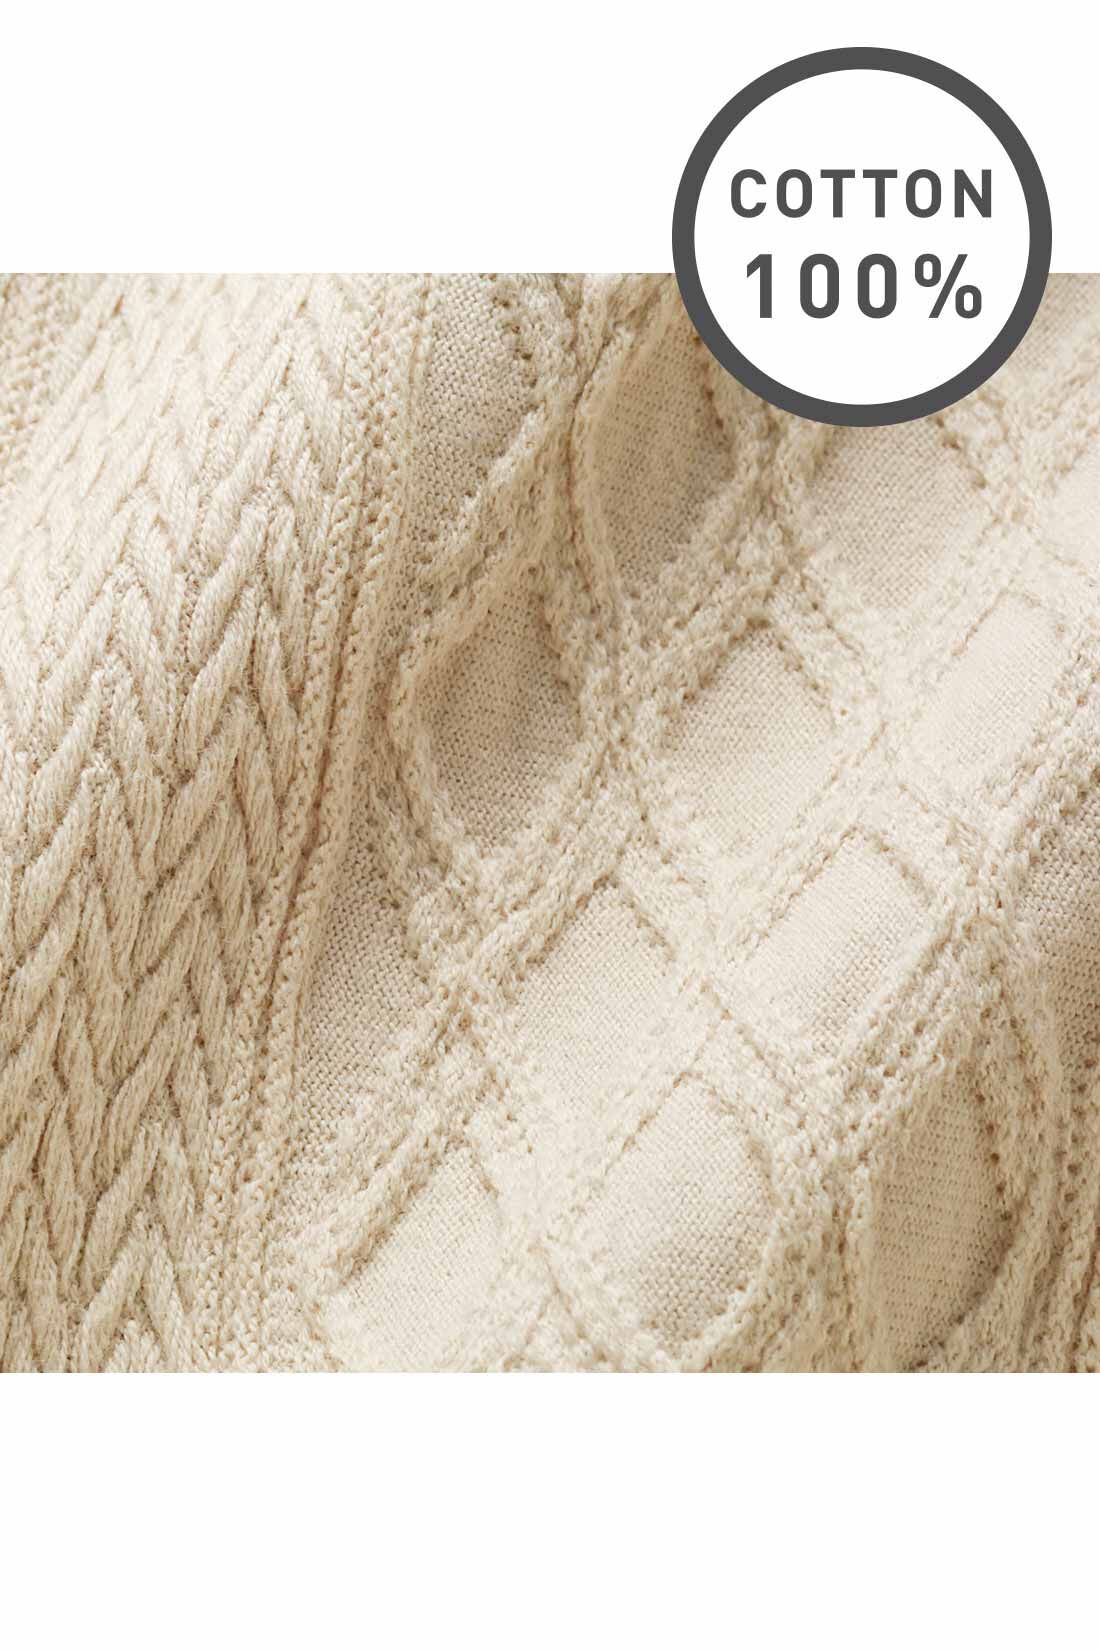 Live in  comfort|Live love cottonプロジェクト　リブ イン コンフォート　編み柄が素敵な袖口リブオーガニックコットントップス〈ライトベージュ〉|ニット見えする、やや厚手のジャカード編みのカットソー素材。